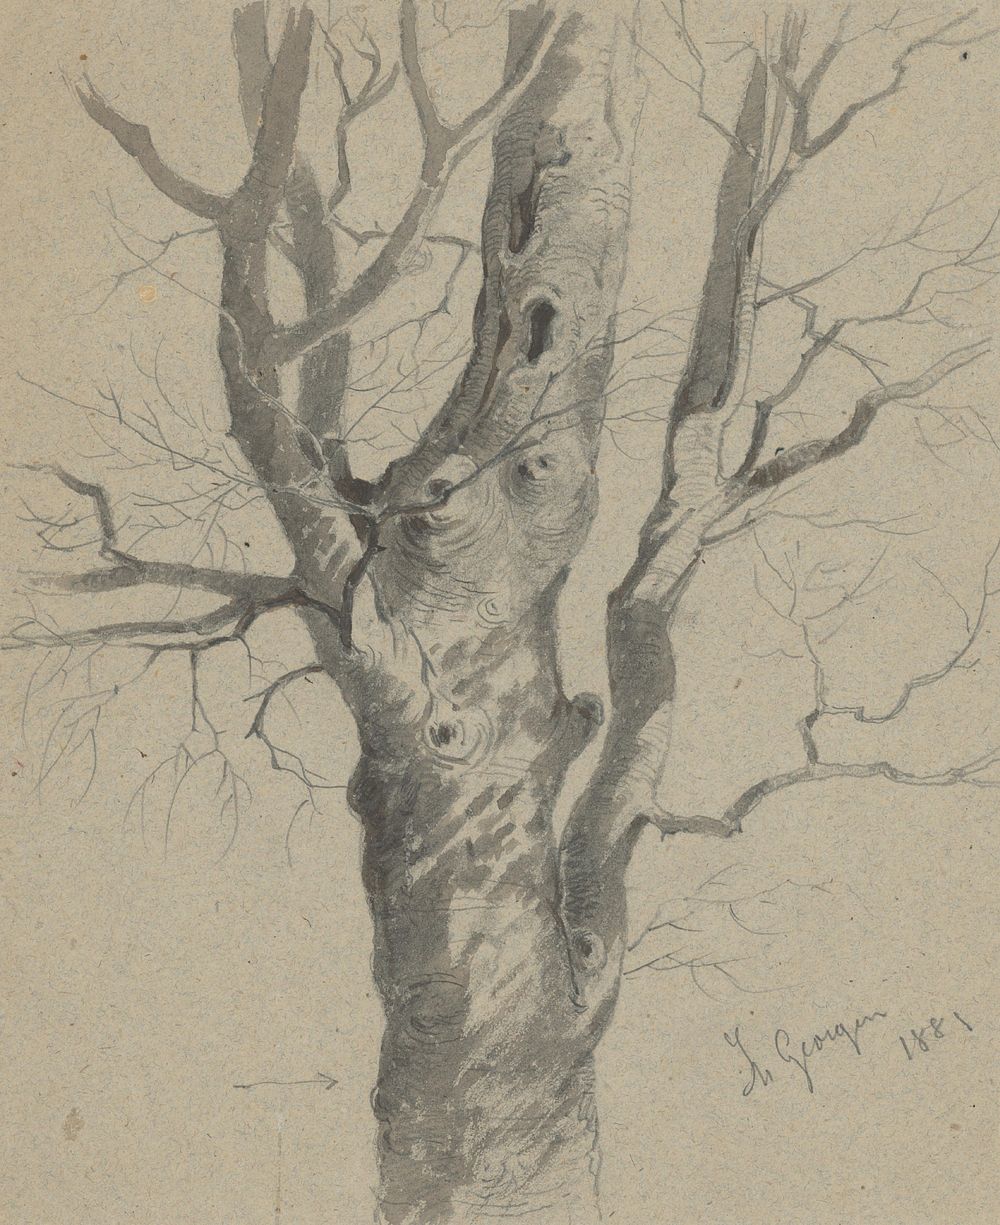 Study of a knotted tree trunk  by Friedrich Carl von Scheidlin